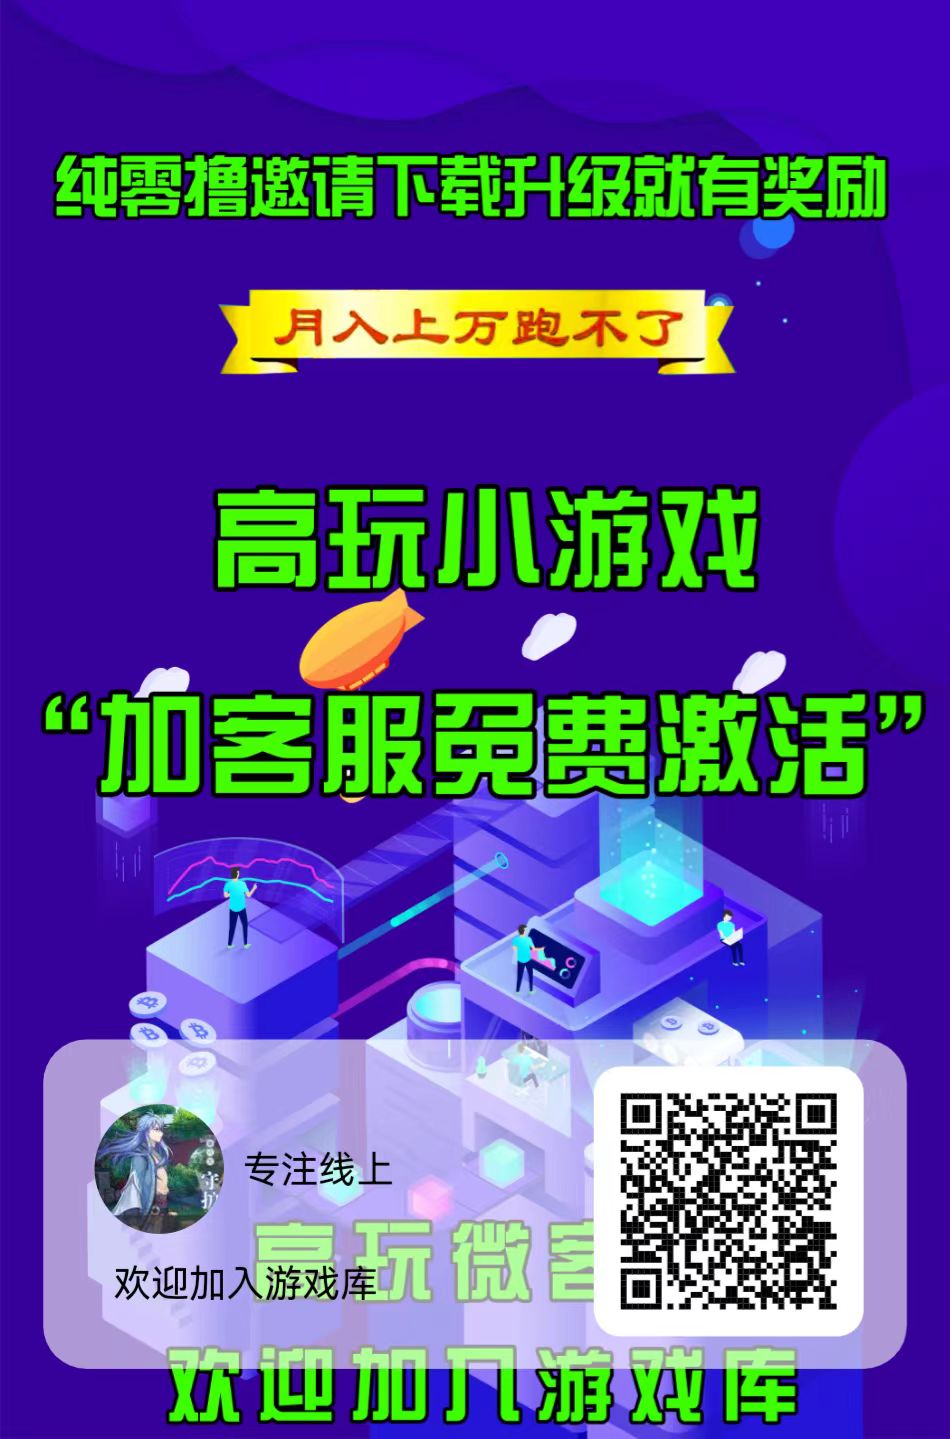 首码高玩vx端 分红广告小游戏 免费下载 下载有米-第1张图片-首码圈